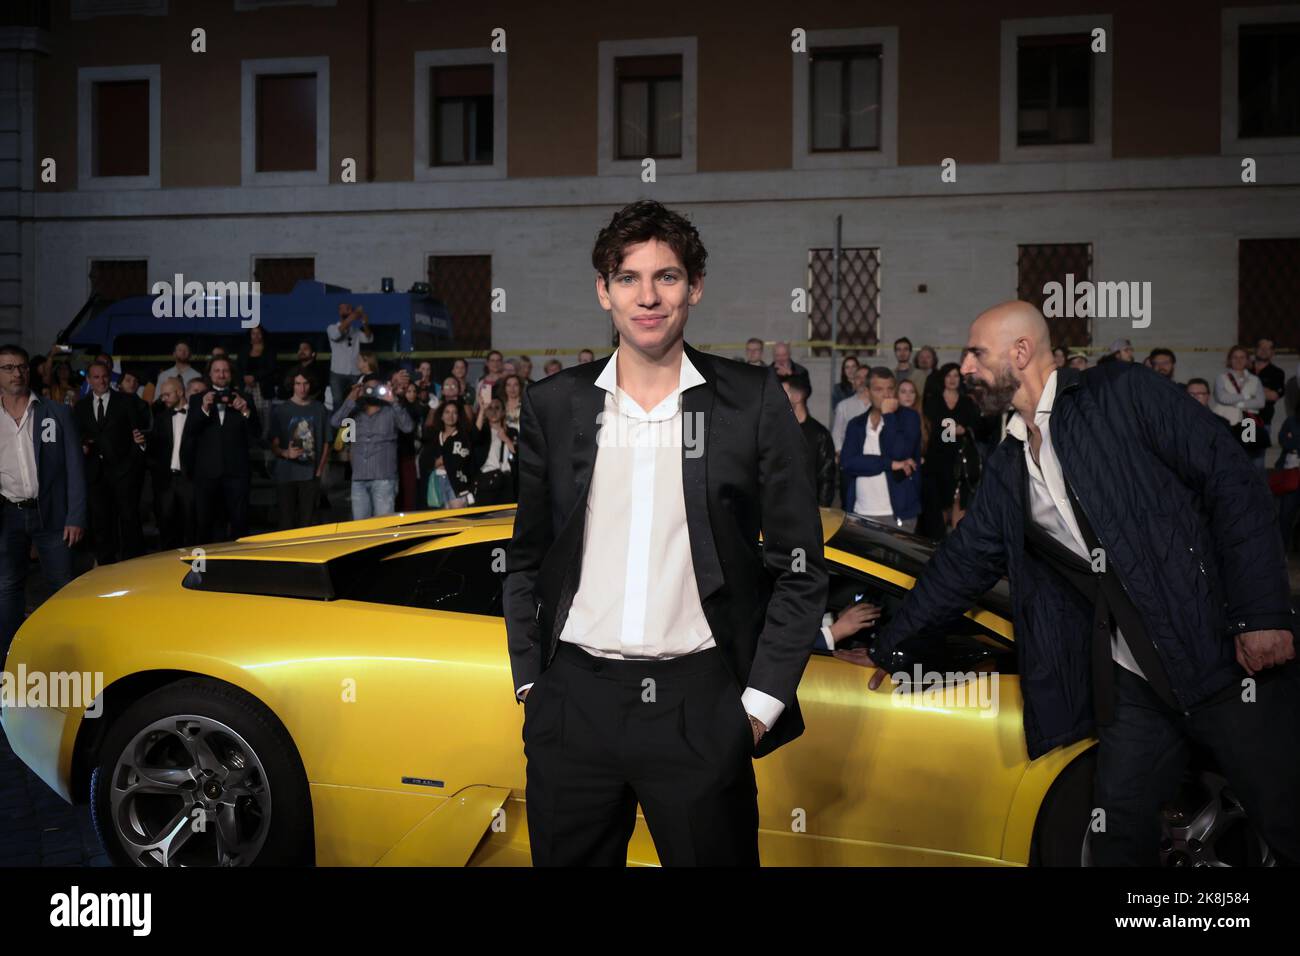 Rome, Italy - October 23, 2022: Giovanni Antonacci attends the red carpet for 'Lamborghini - The Man Behind the Legend' at Alice Nella Città during the 17th Rome Film Festival. Stock Photo